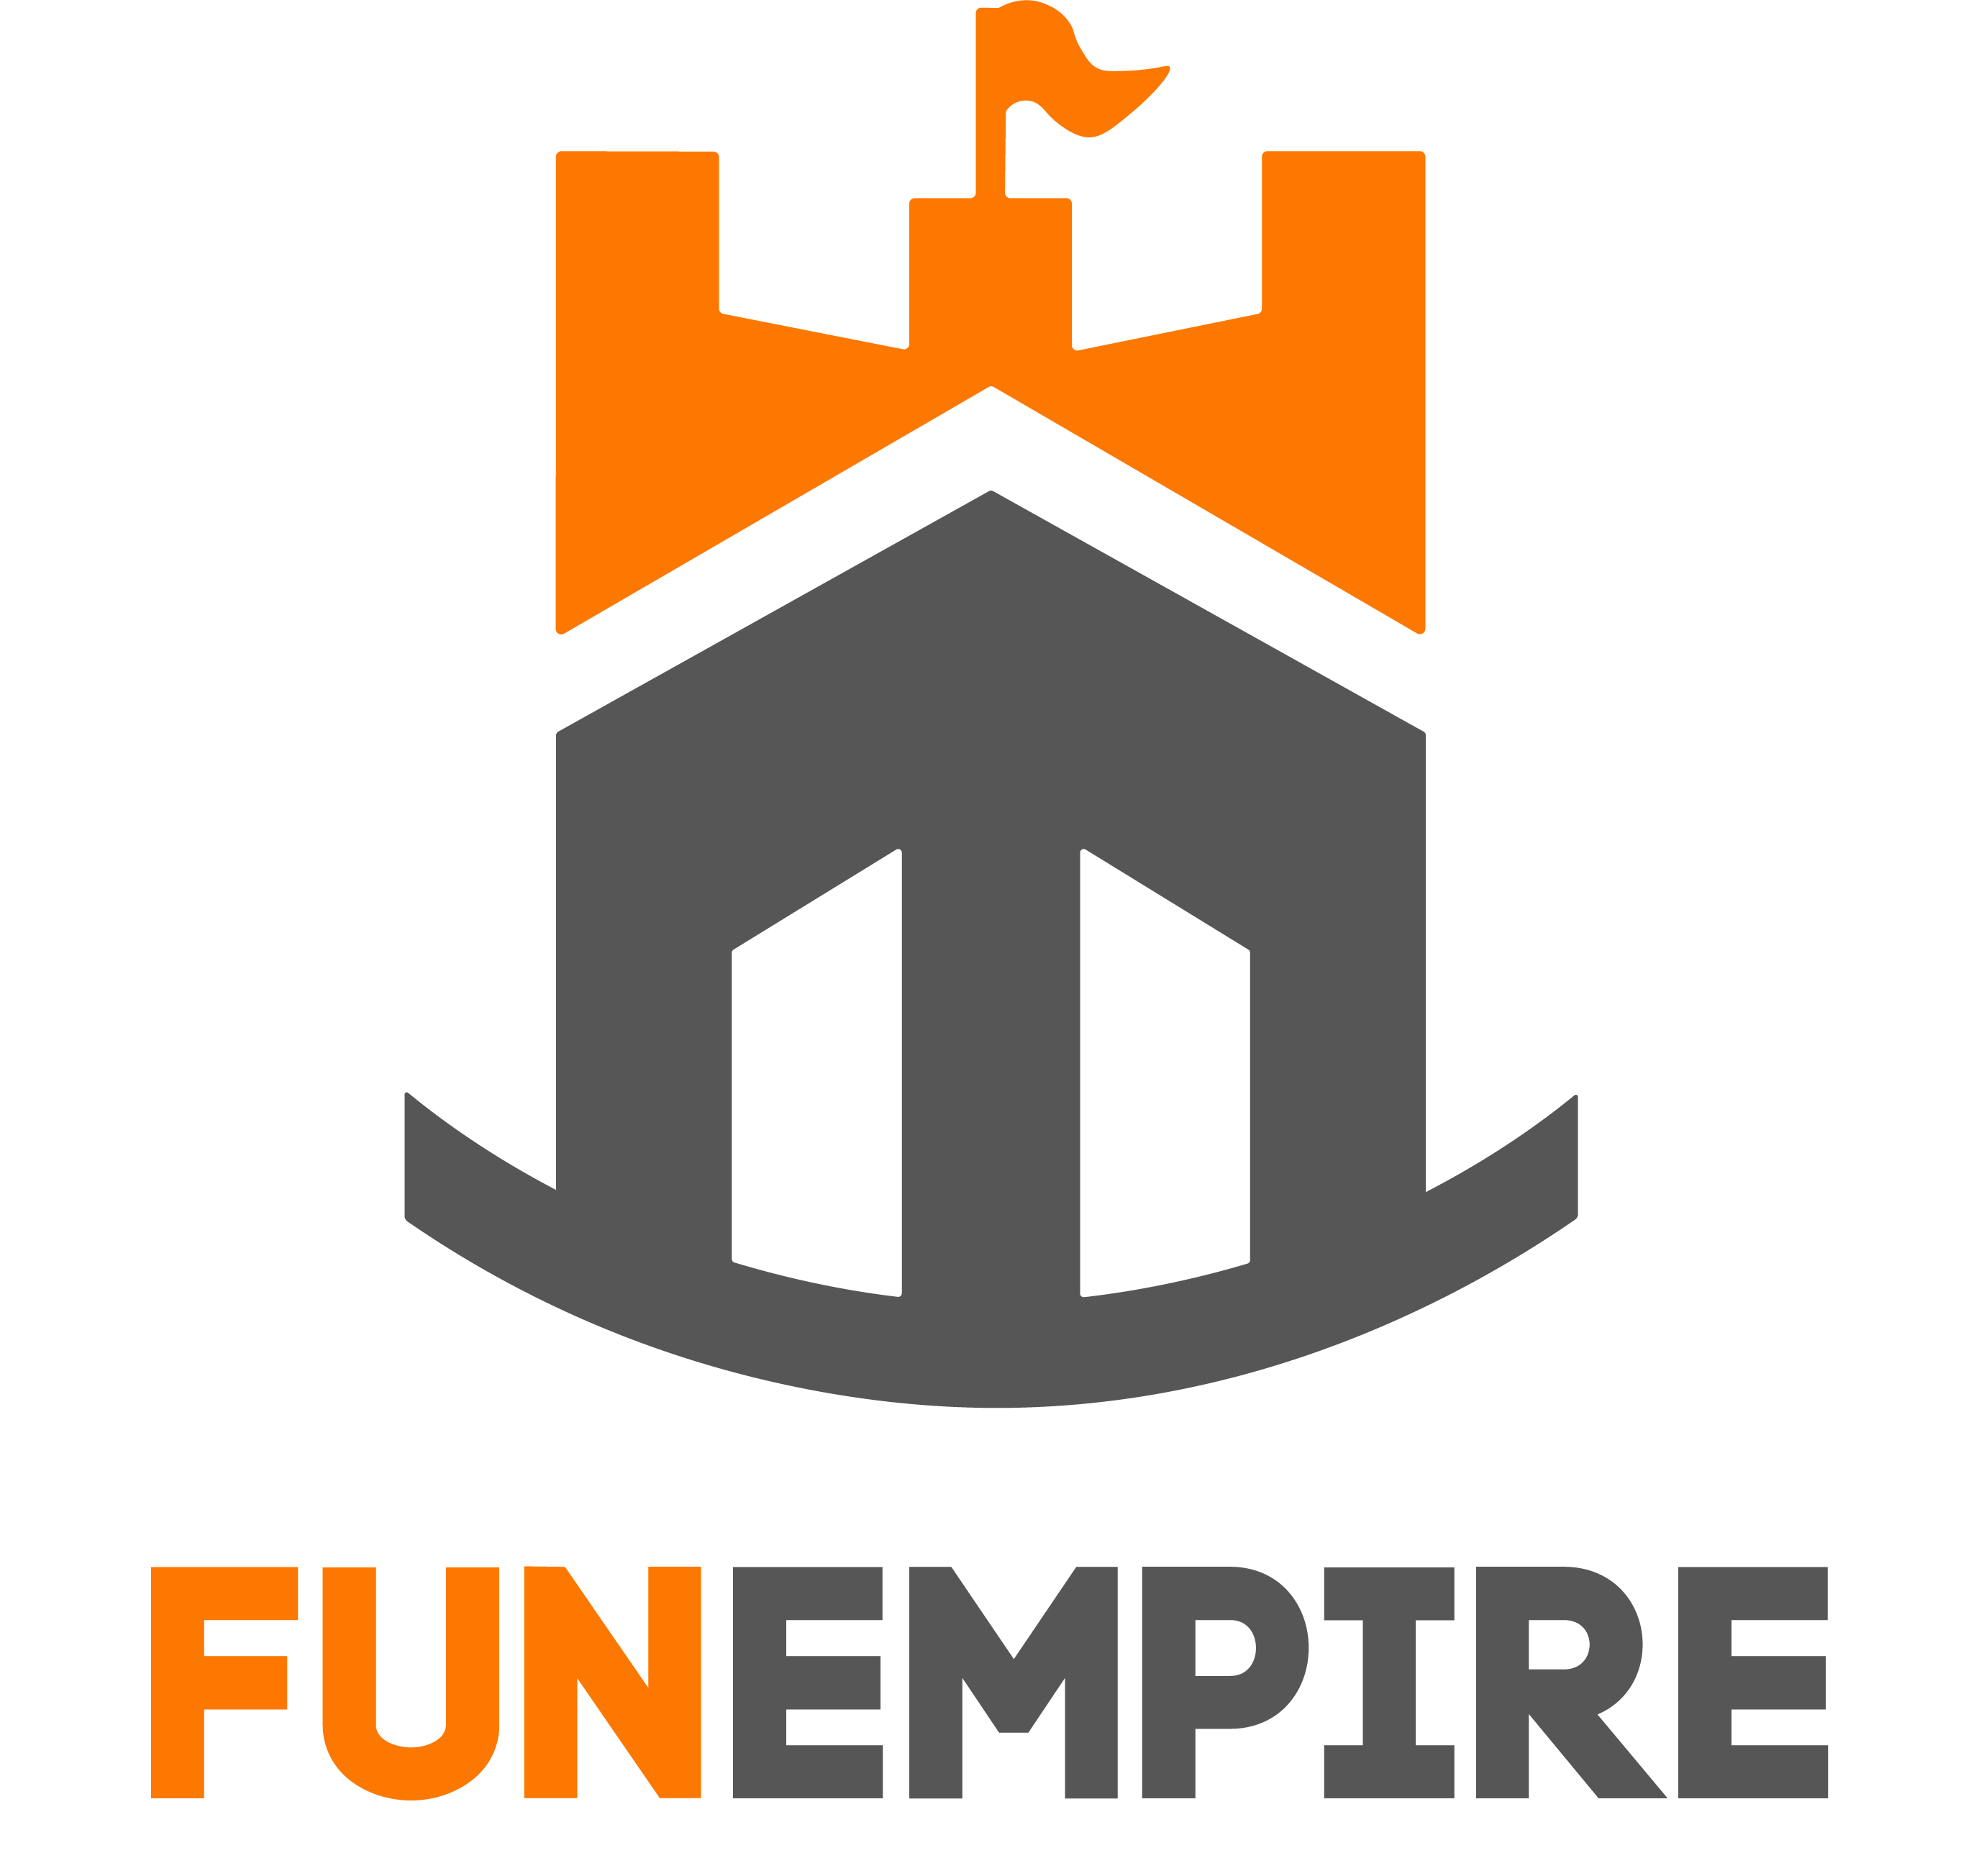 The Fun Empire Pte. Ltd. logo